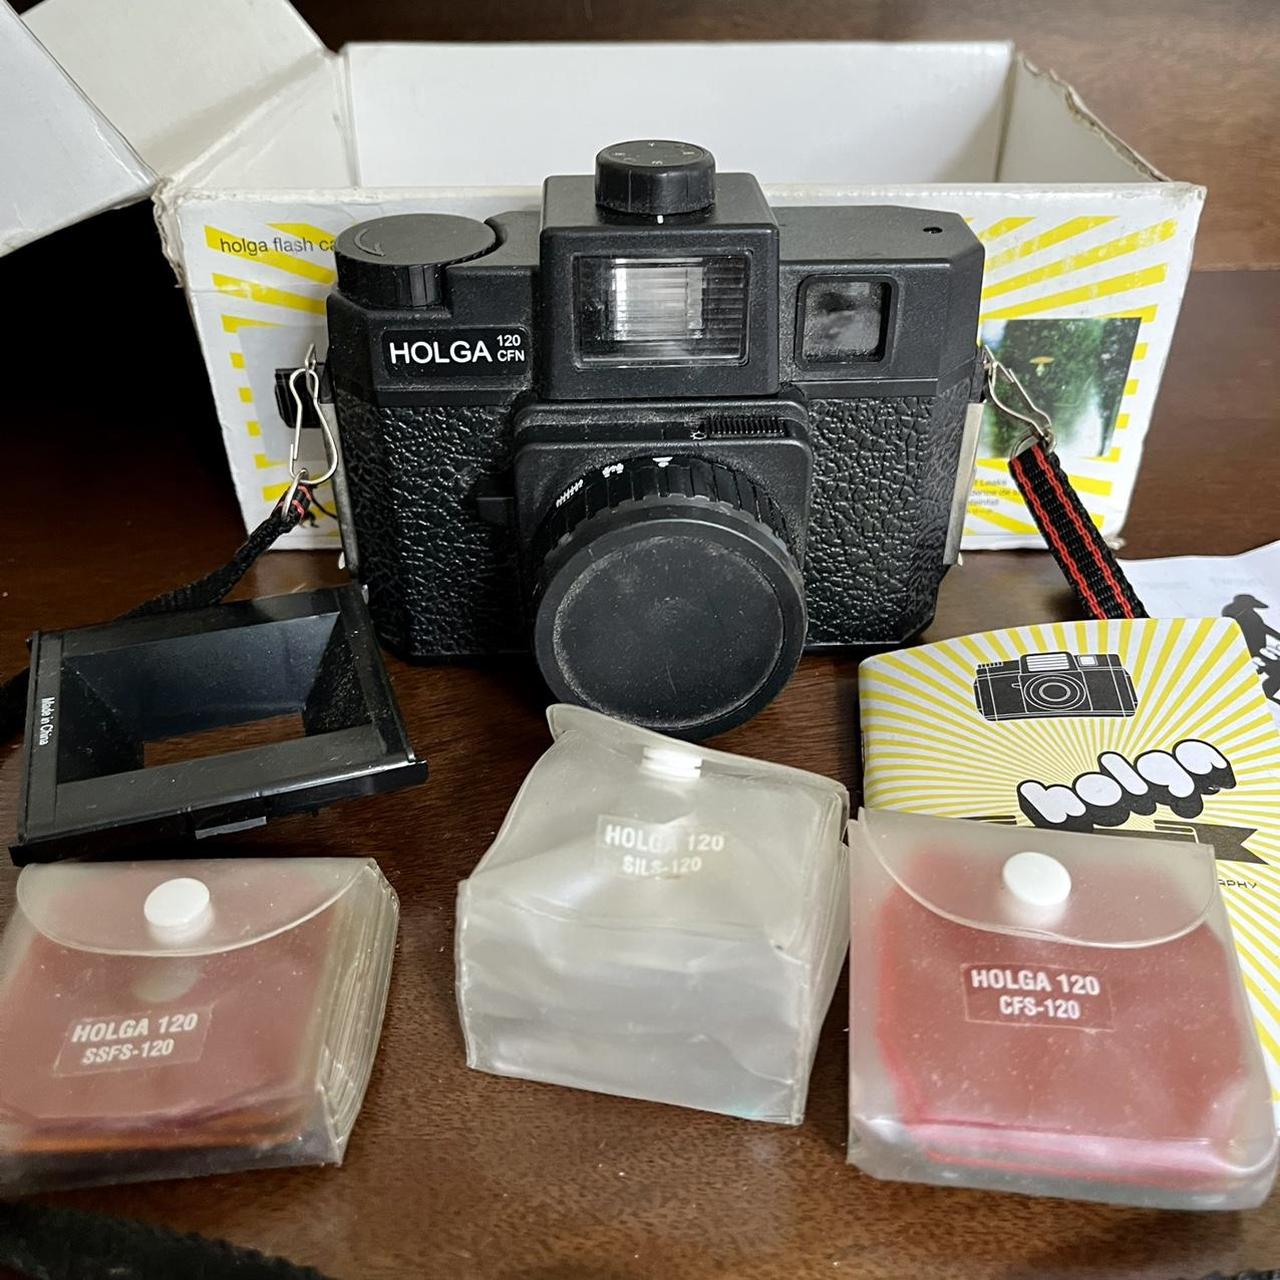 Product Image 2 - Holga flash camera starter kit